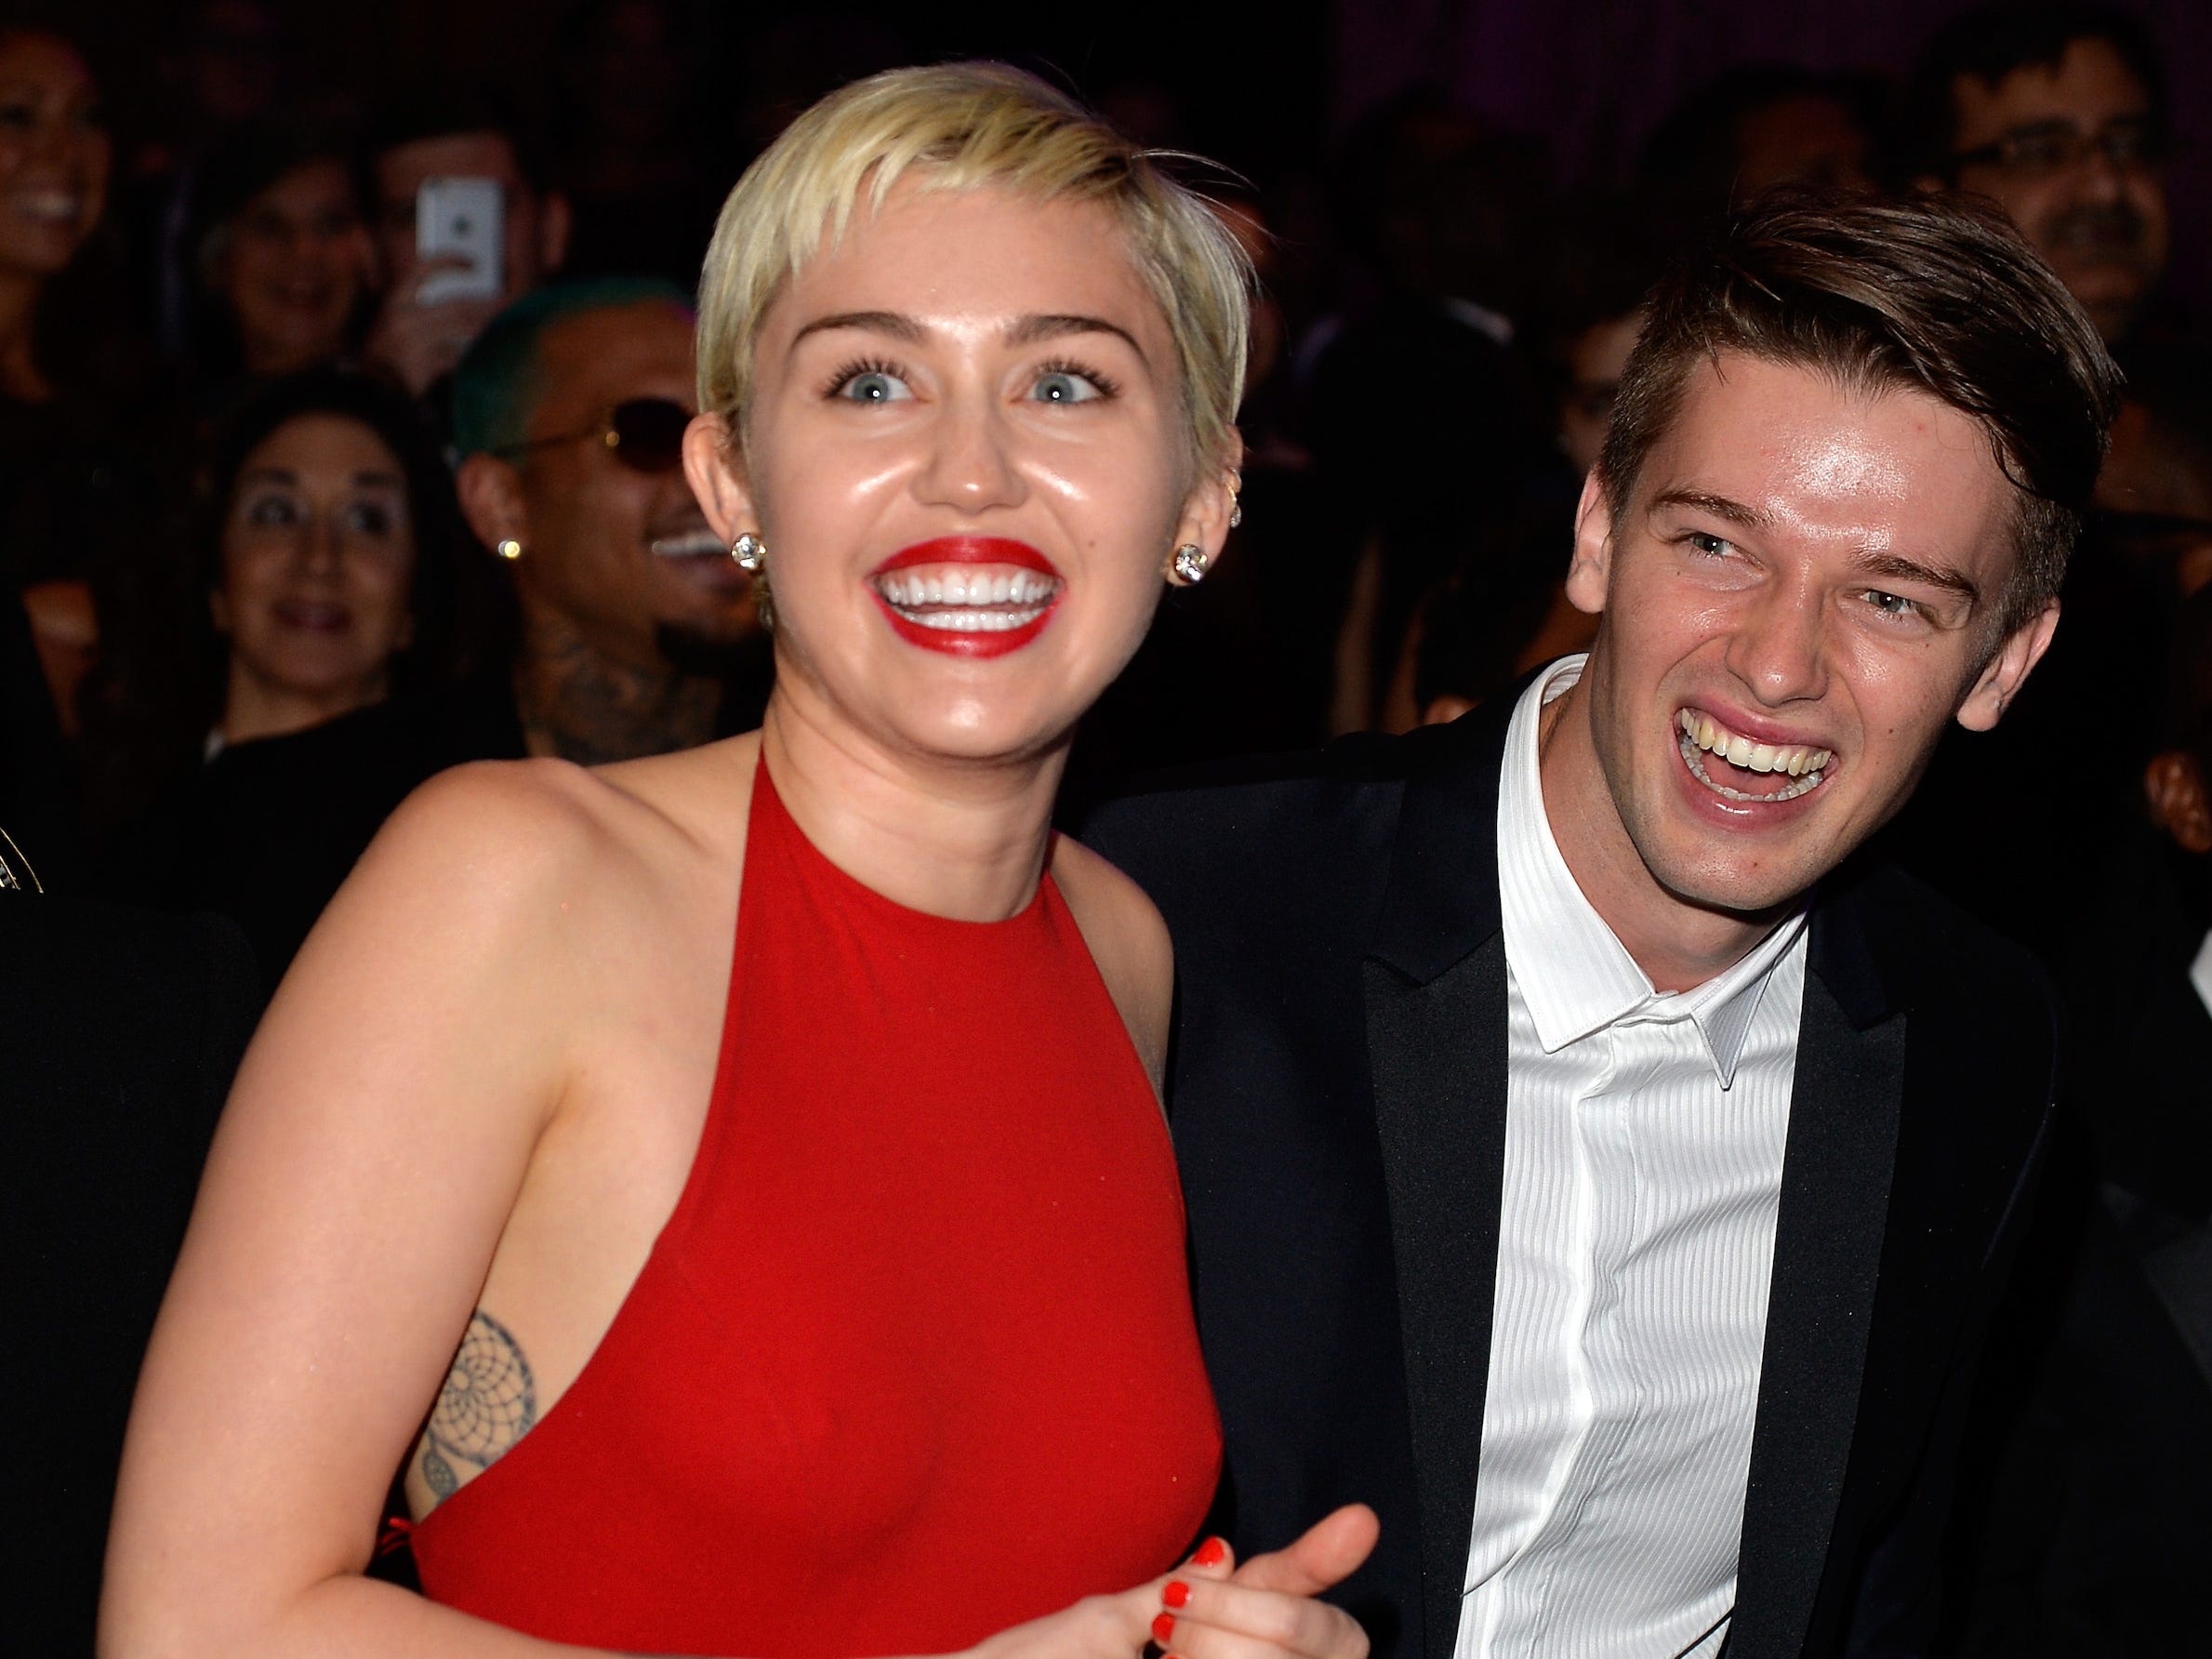 Miley Cyrus, in einem roten Kleid und Lippenstiften, lächelt während einer Veranstaltung mit Patrick Schwarzenegger, der einen schwarzen Anzug und ein weißes Hemd trägt.